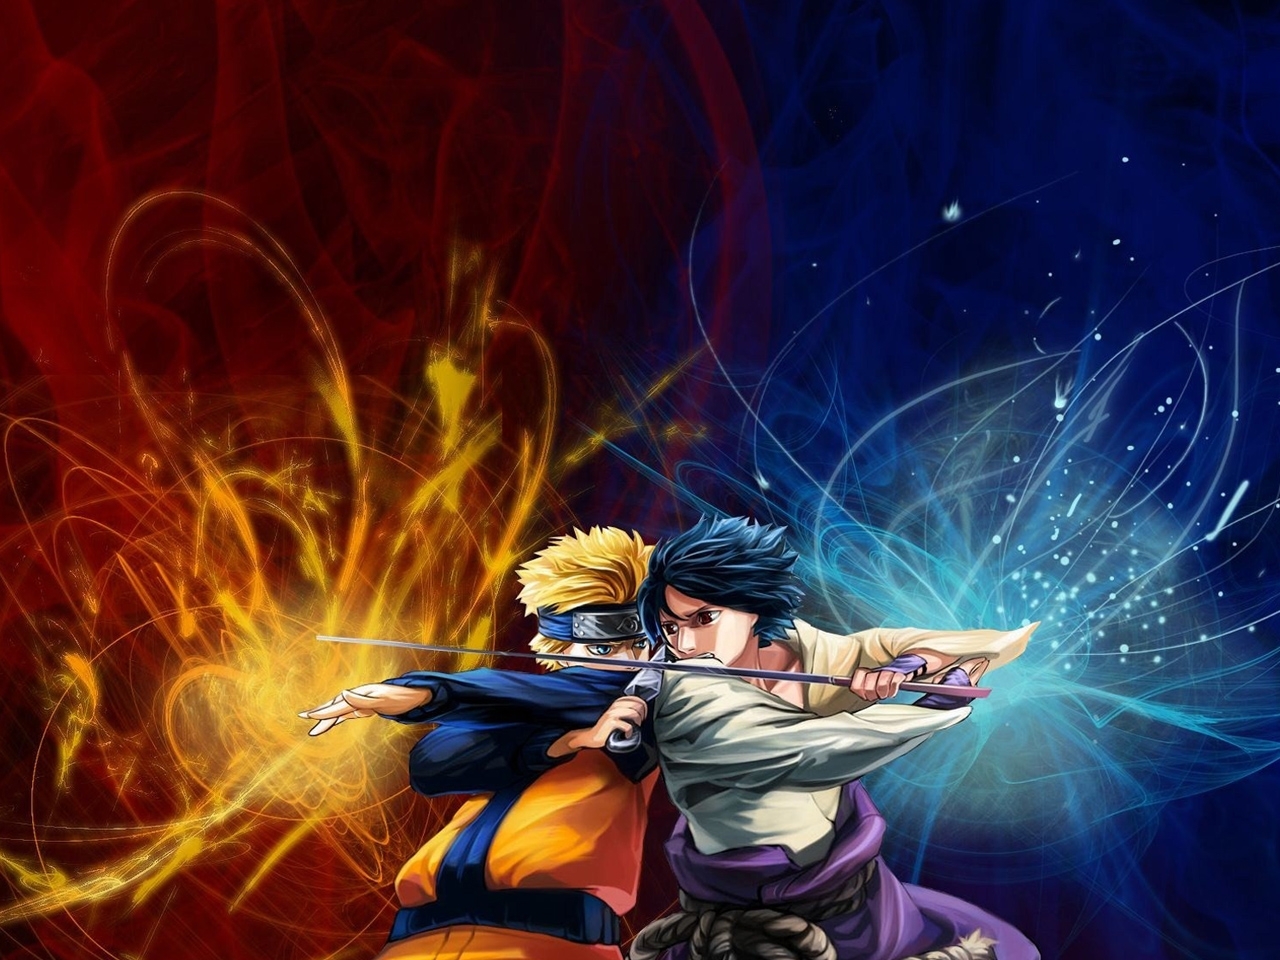 Скачать обои Наруто (Naruto) на телефон бесплатно